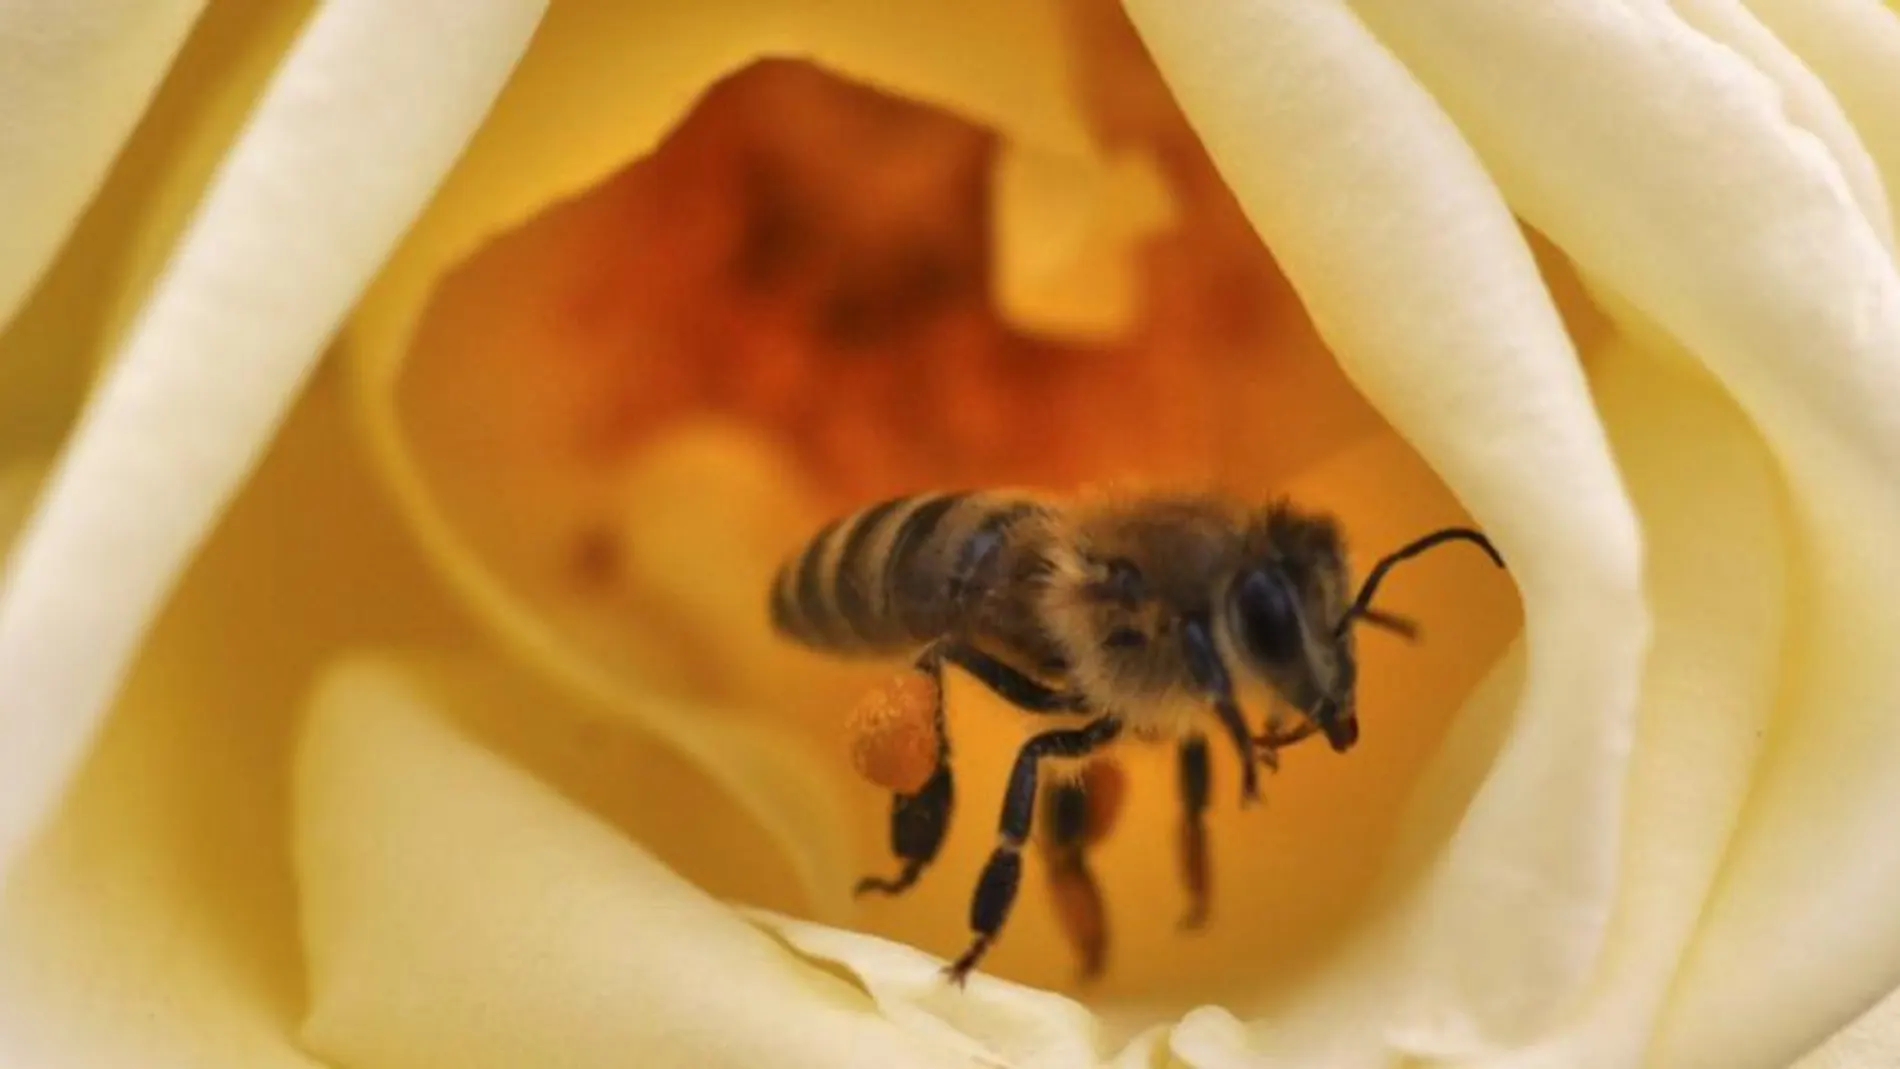 Las reacciones alérgicas graves por picaduras de avispas y abejas aumentan en los últimos años